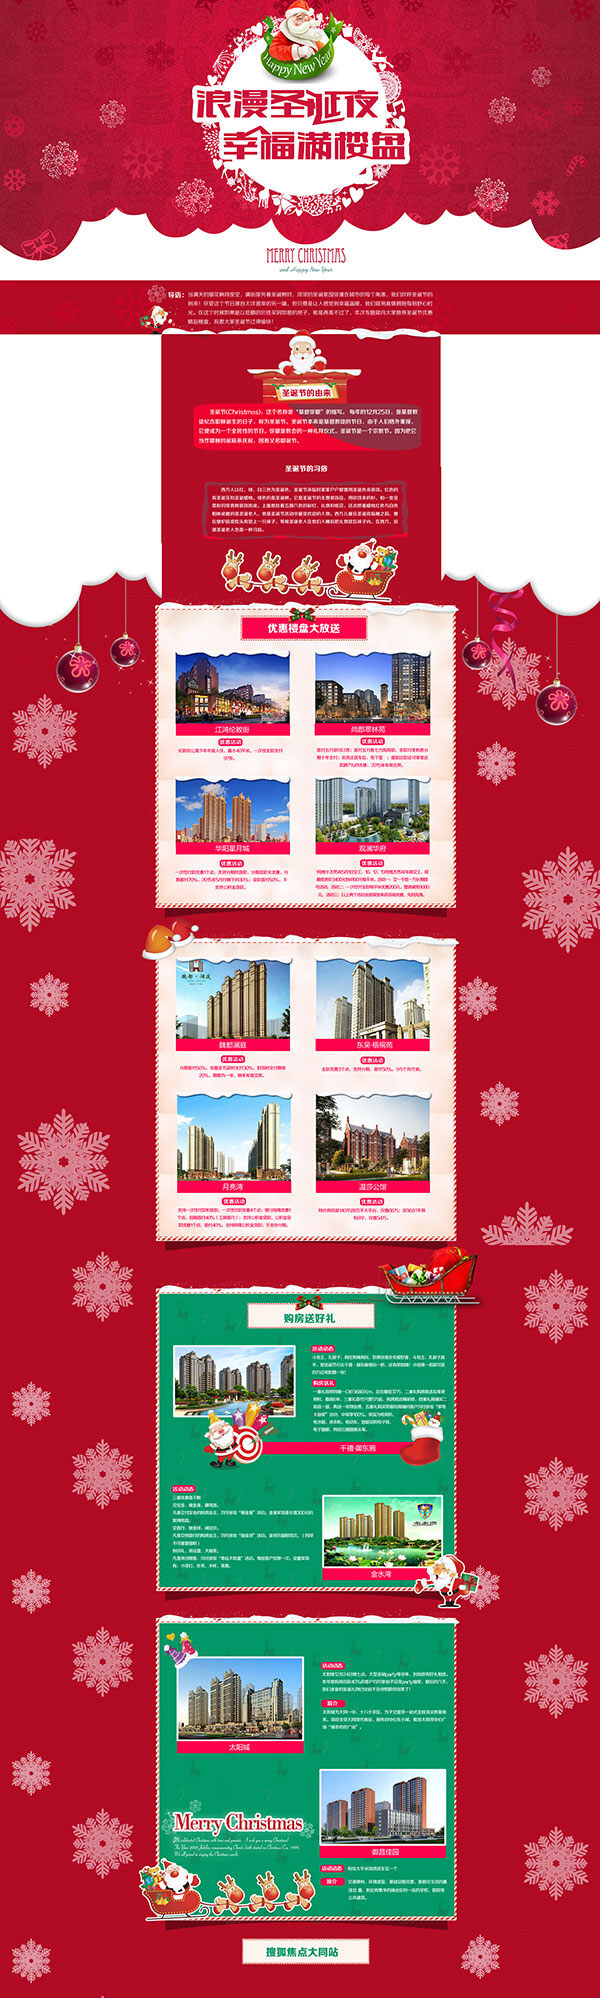 圣诞节 专题 首页 楼盘 促销活动 快乐 圣诞 主题活动 喜庆 节日 活动 网站首页 红色